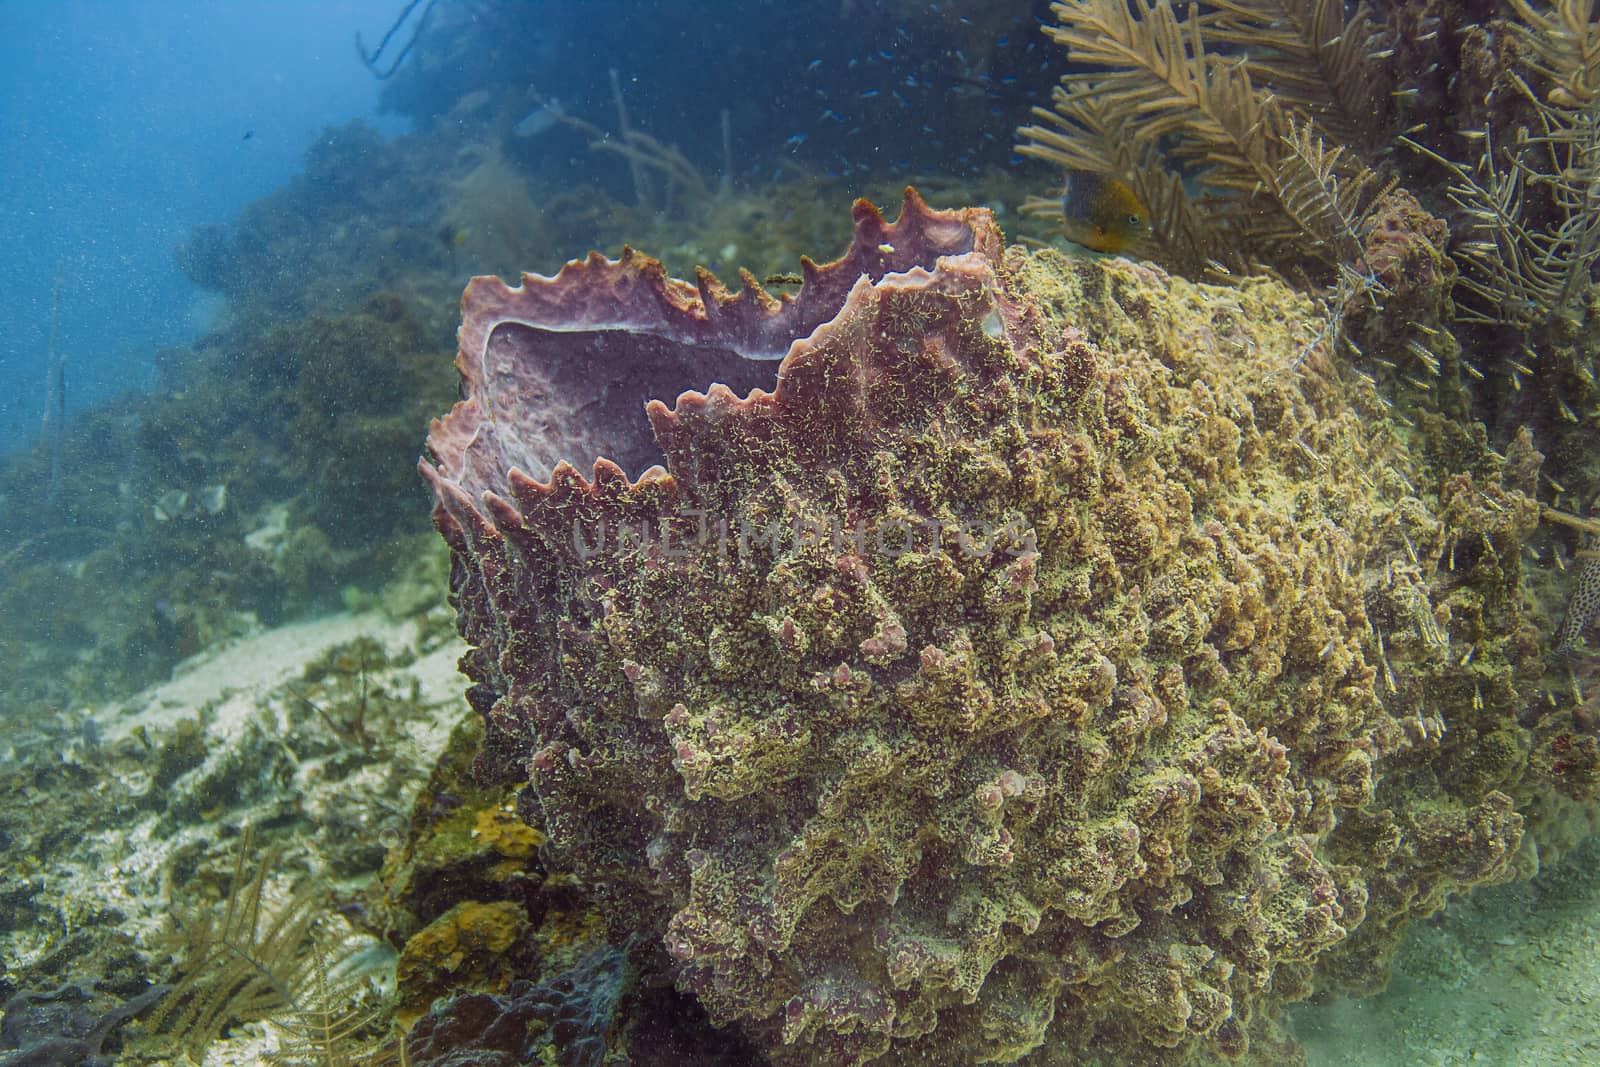 Xestospngia muta in a caribbean sea